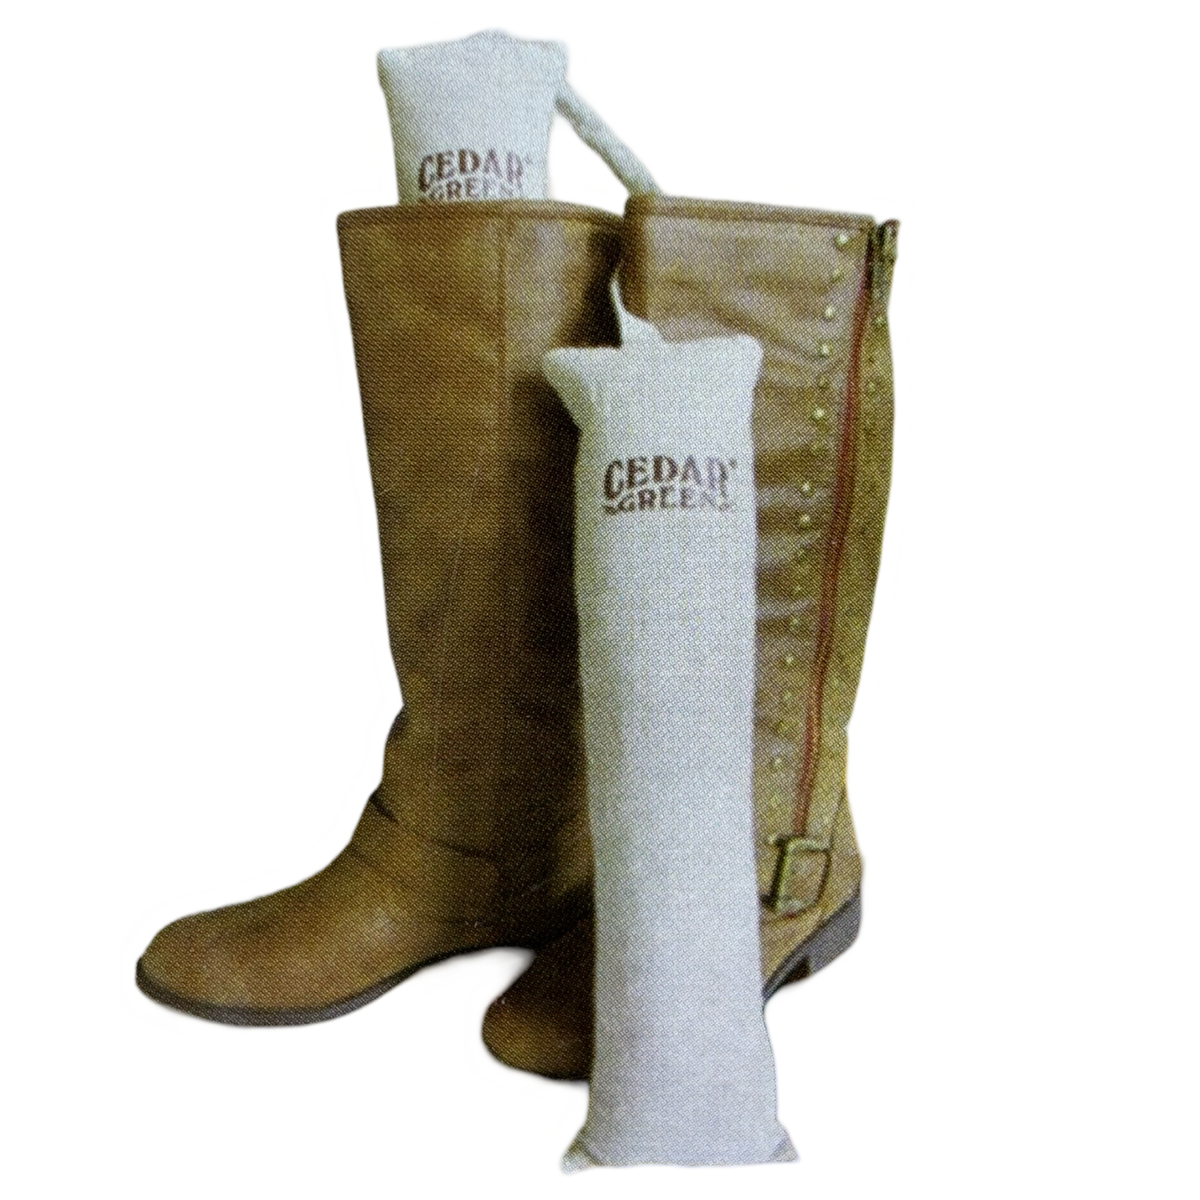 1 Pair Of 100% Natural Cedar Green Boot Shapers - Keeps Shape, Absorbs Moisture!